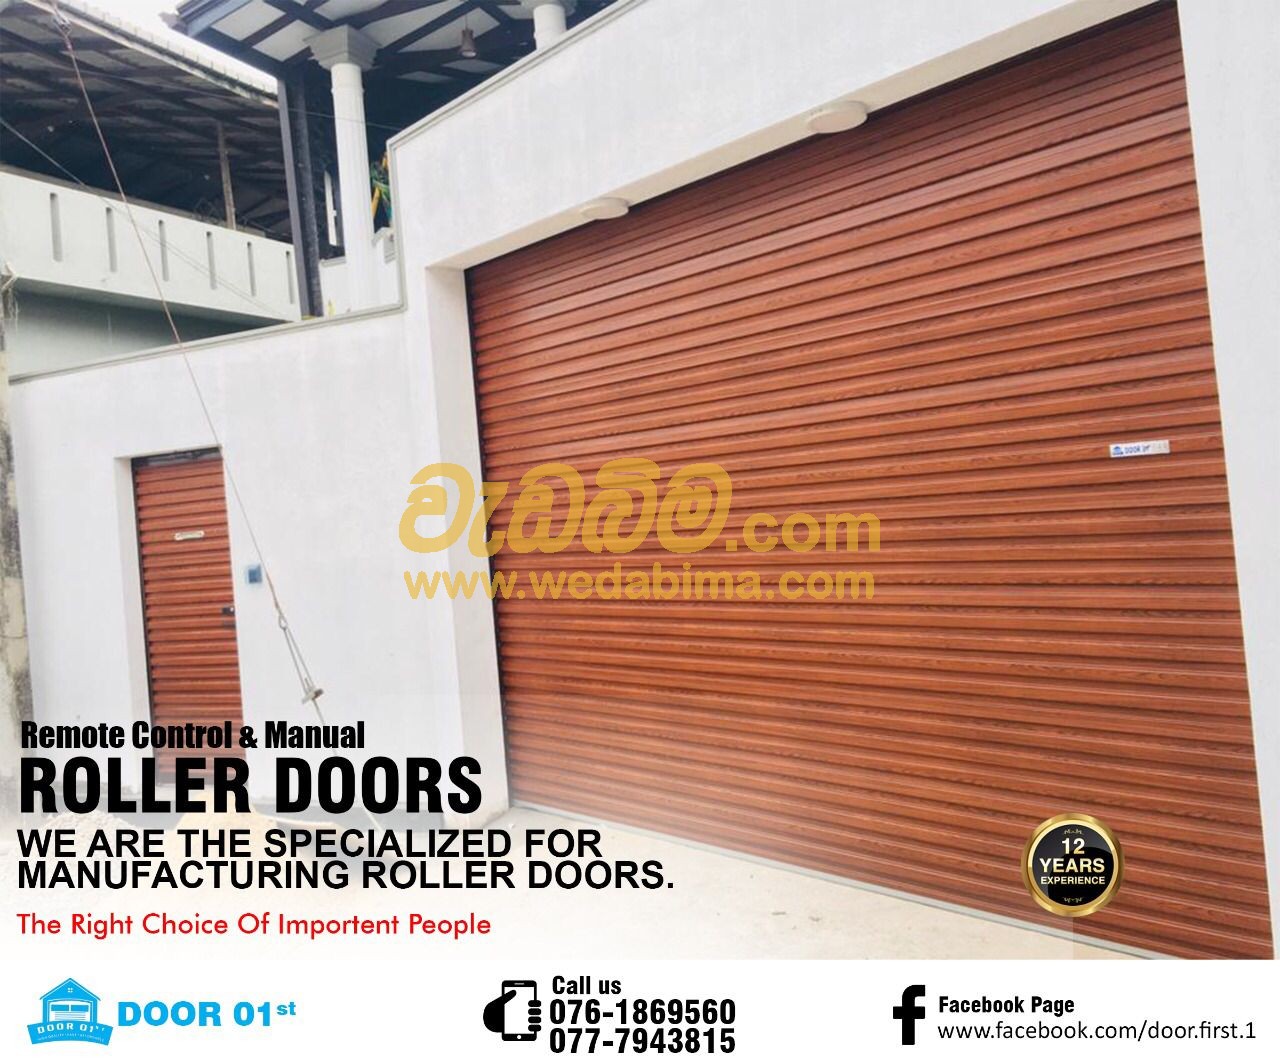 Roller Door Contractors in Sri Lanka